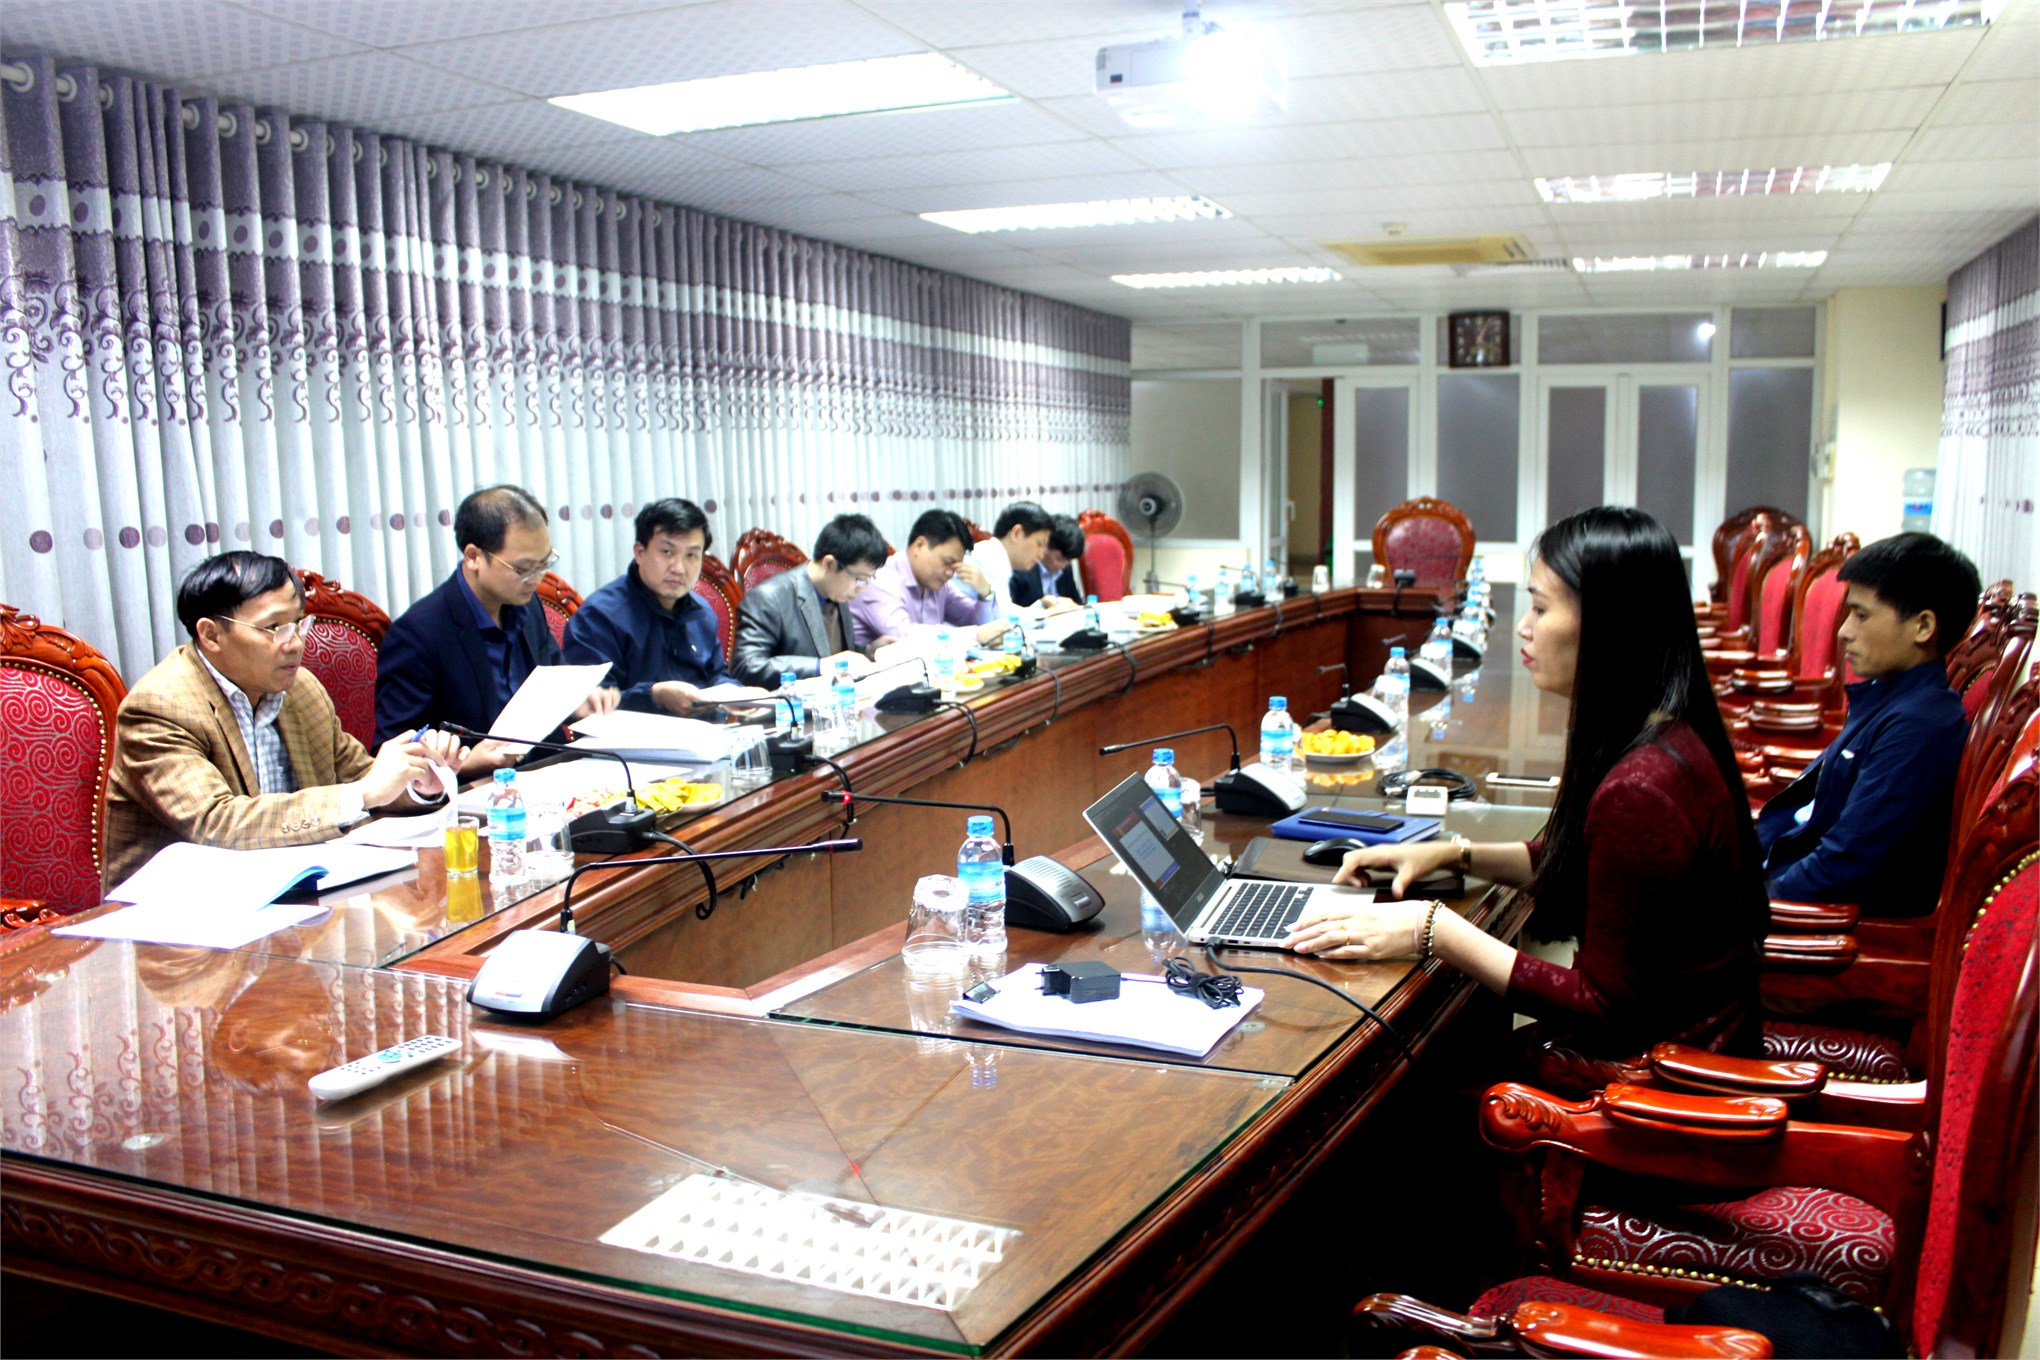 Nghiệm thu cấp cơ sở đề tài nghiên cứu khoa học Bộ Công Thương do TS. Nguyễn Thị Diệu Linh chủ nhiệm